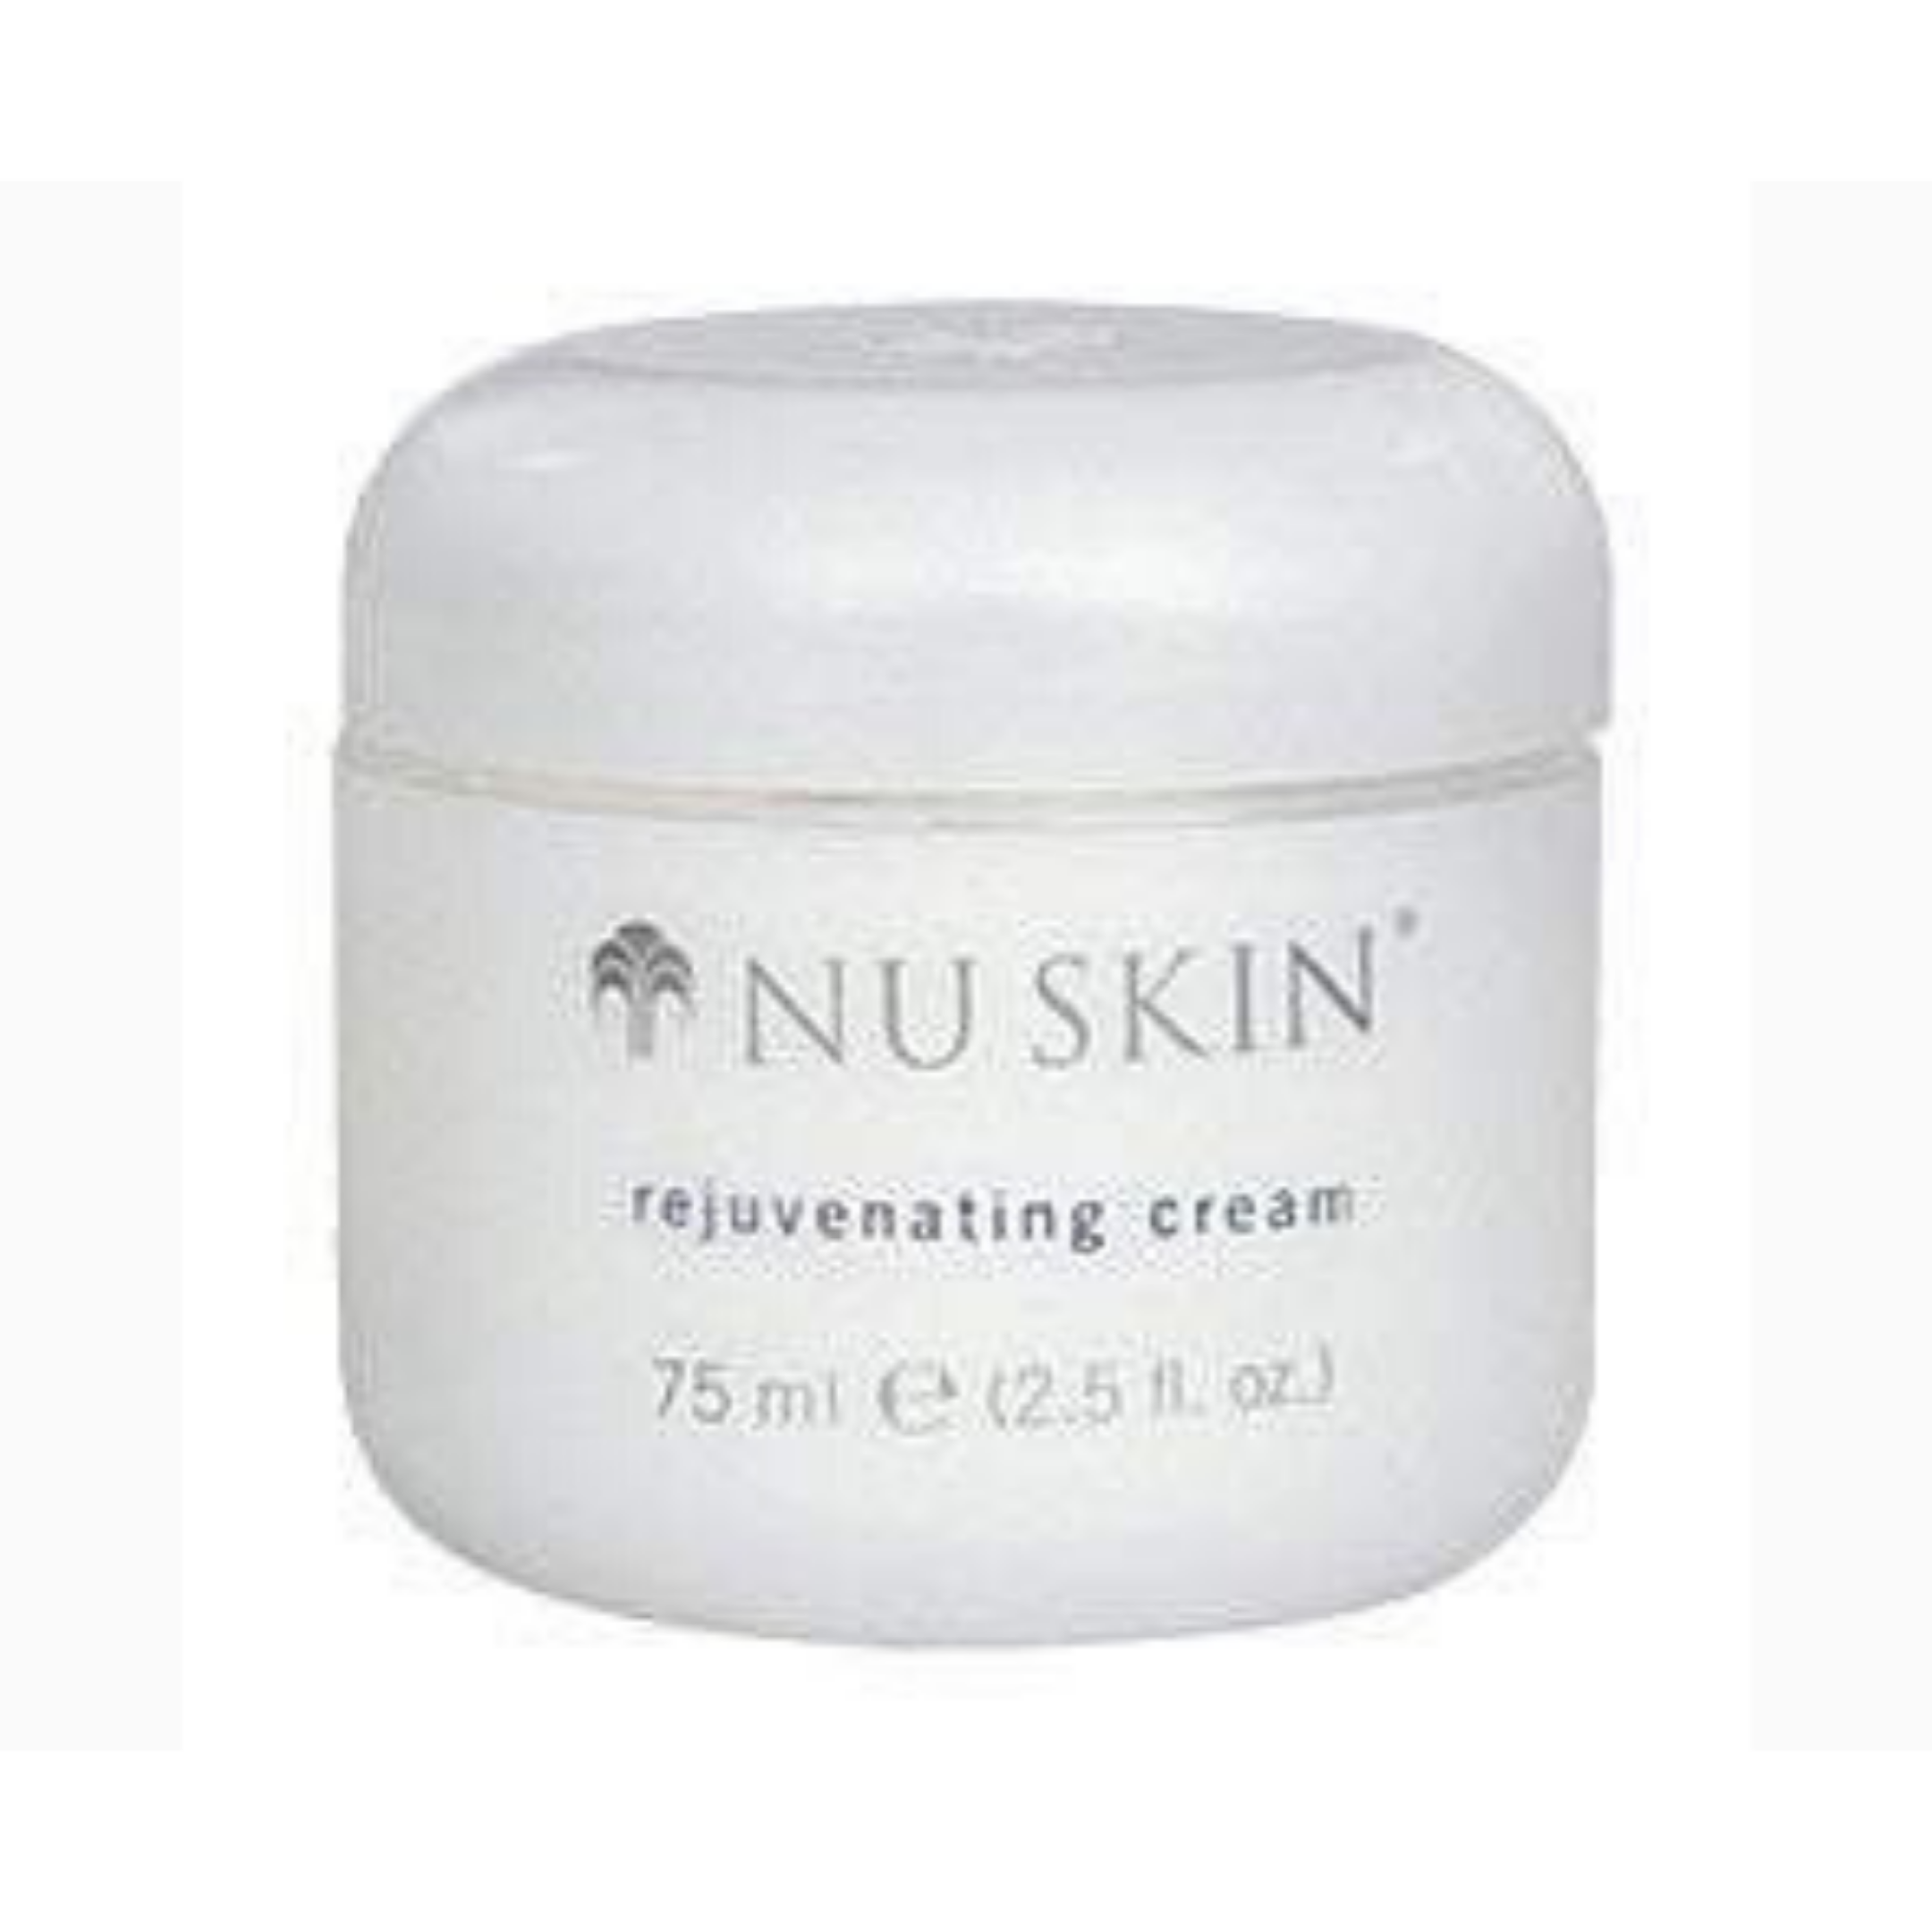 Rejuvenating Cream With Emollients